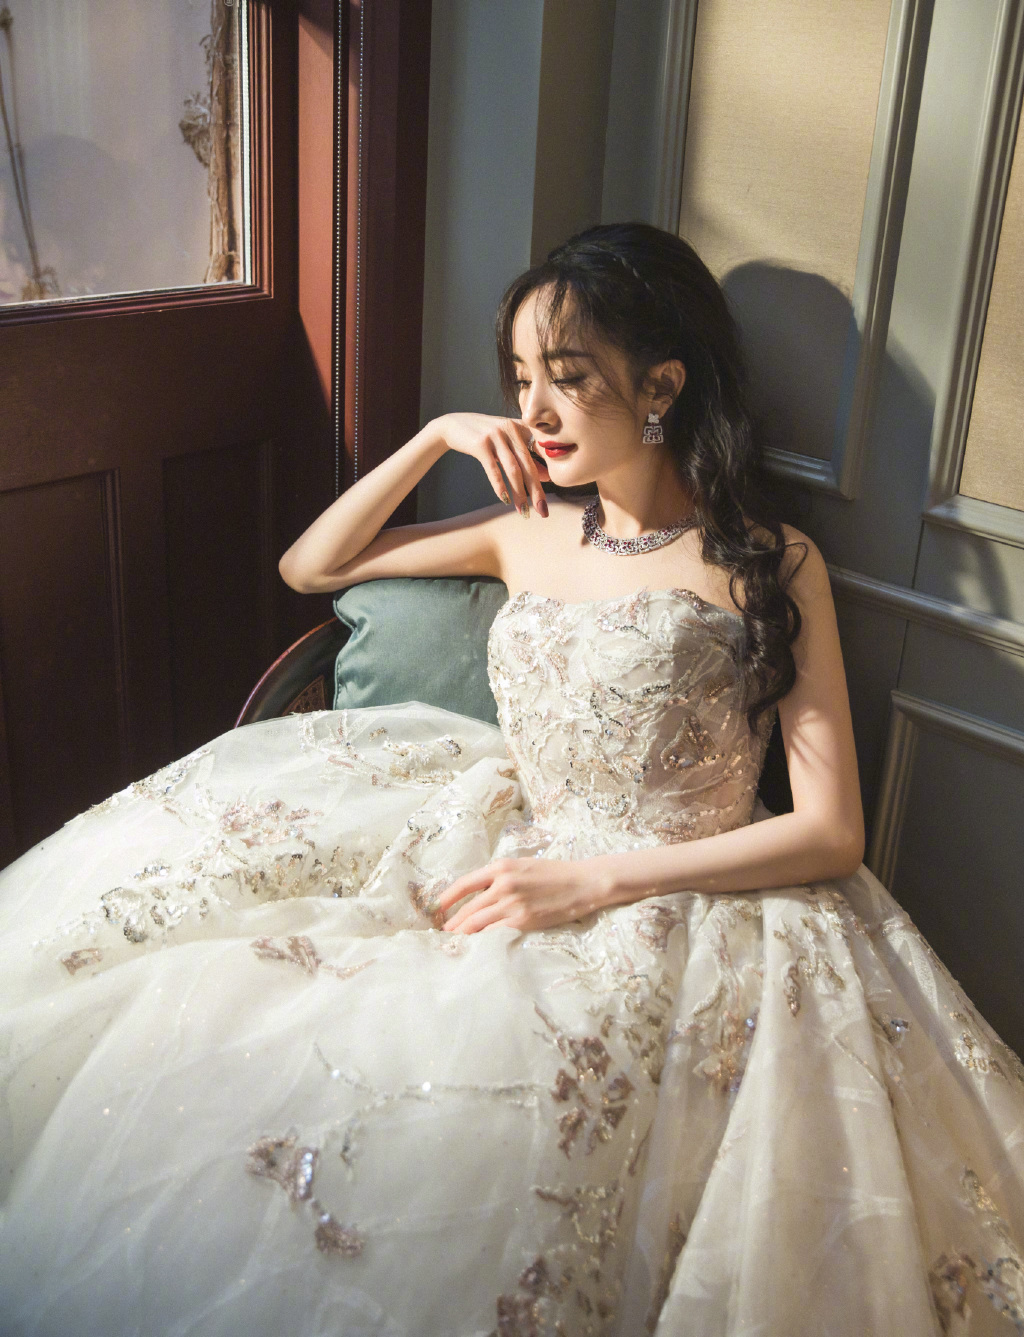 照片中，她身着浪漫白色星光裙现身古堡之中，简直就是复古又优雅的画中美人。